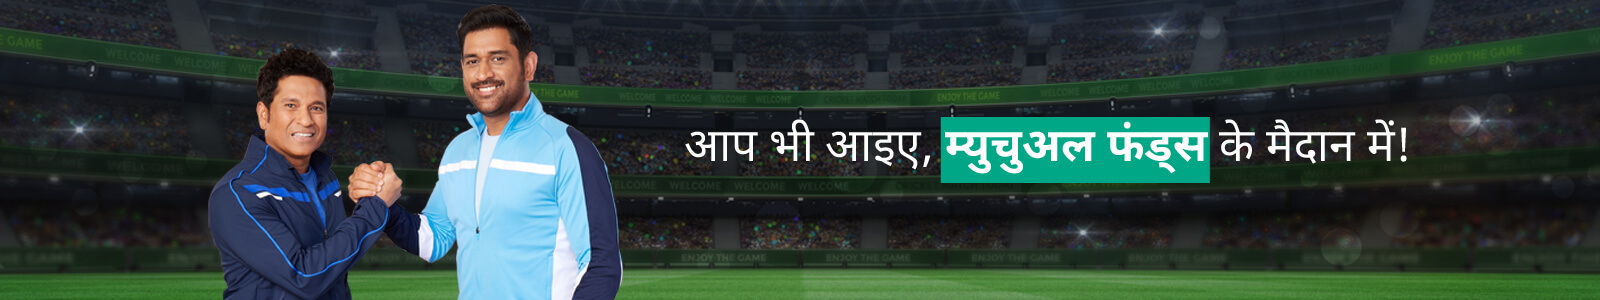 Cricketer banner